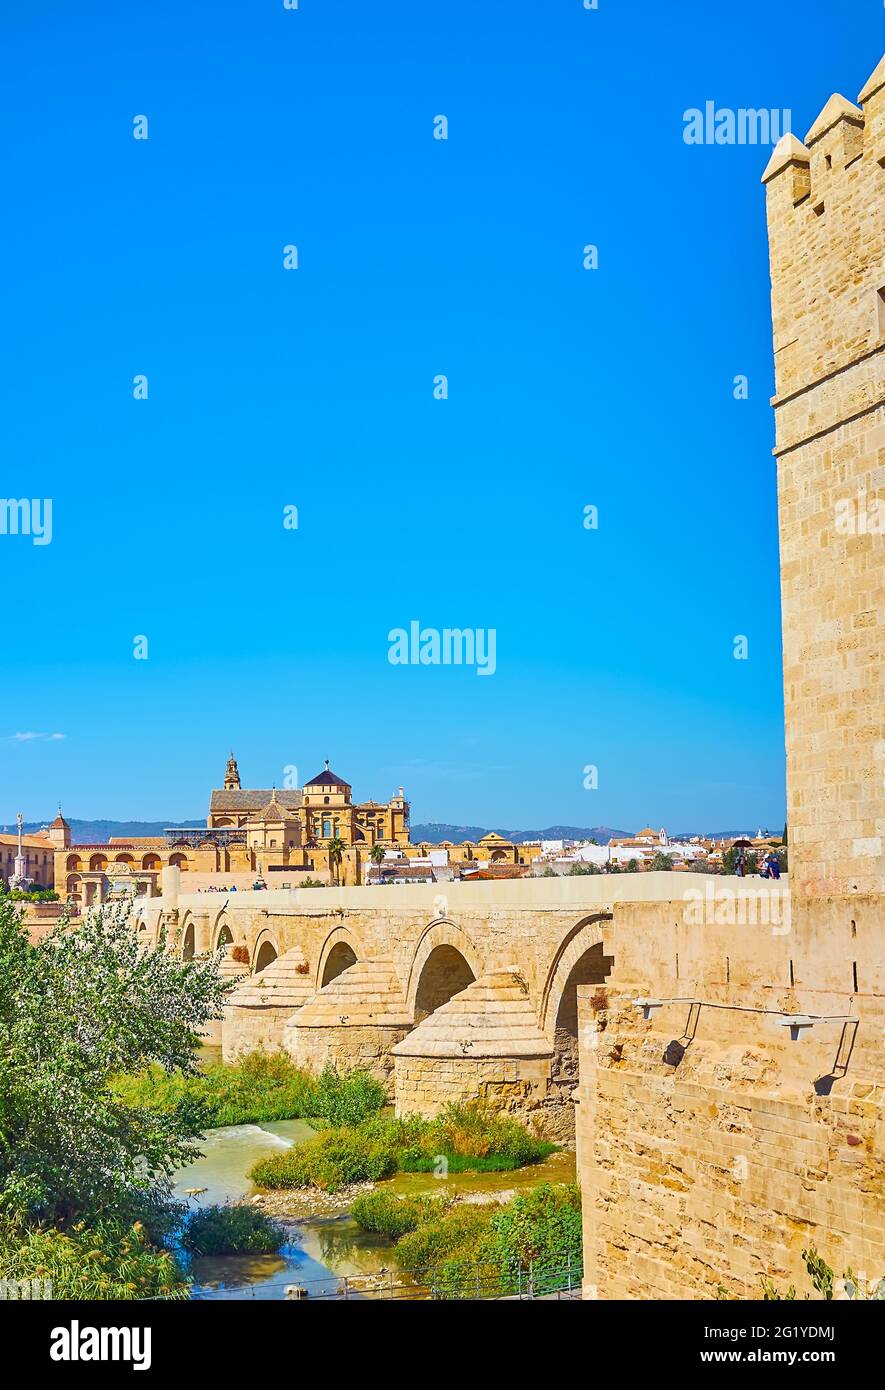 Der Blick auf die antike römische Steinbrücke und das monumentale Gebäude der Mezquita-Kathedrale (Moschee-Kathedrale) im Hintergrund, Cordoba, Spanien Stockfoto